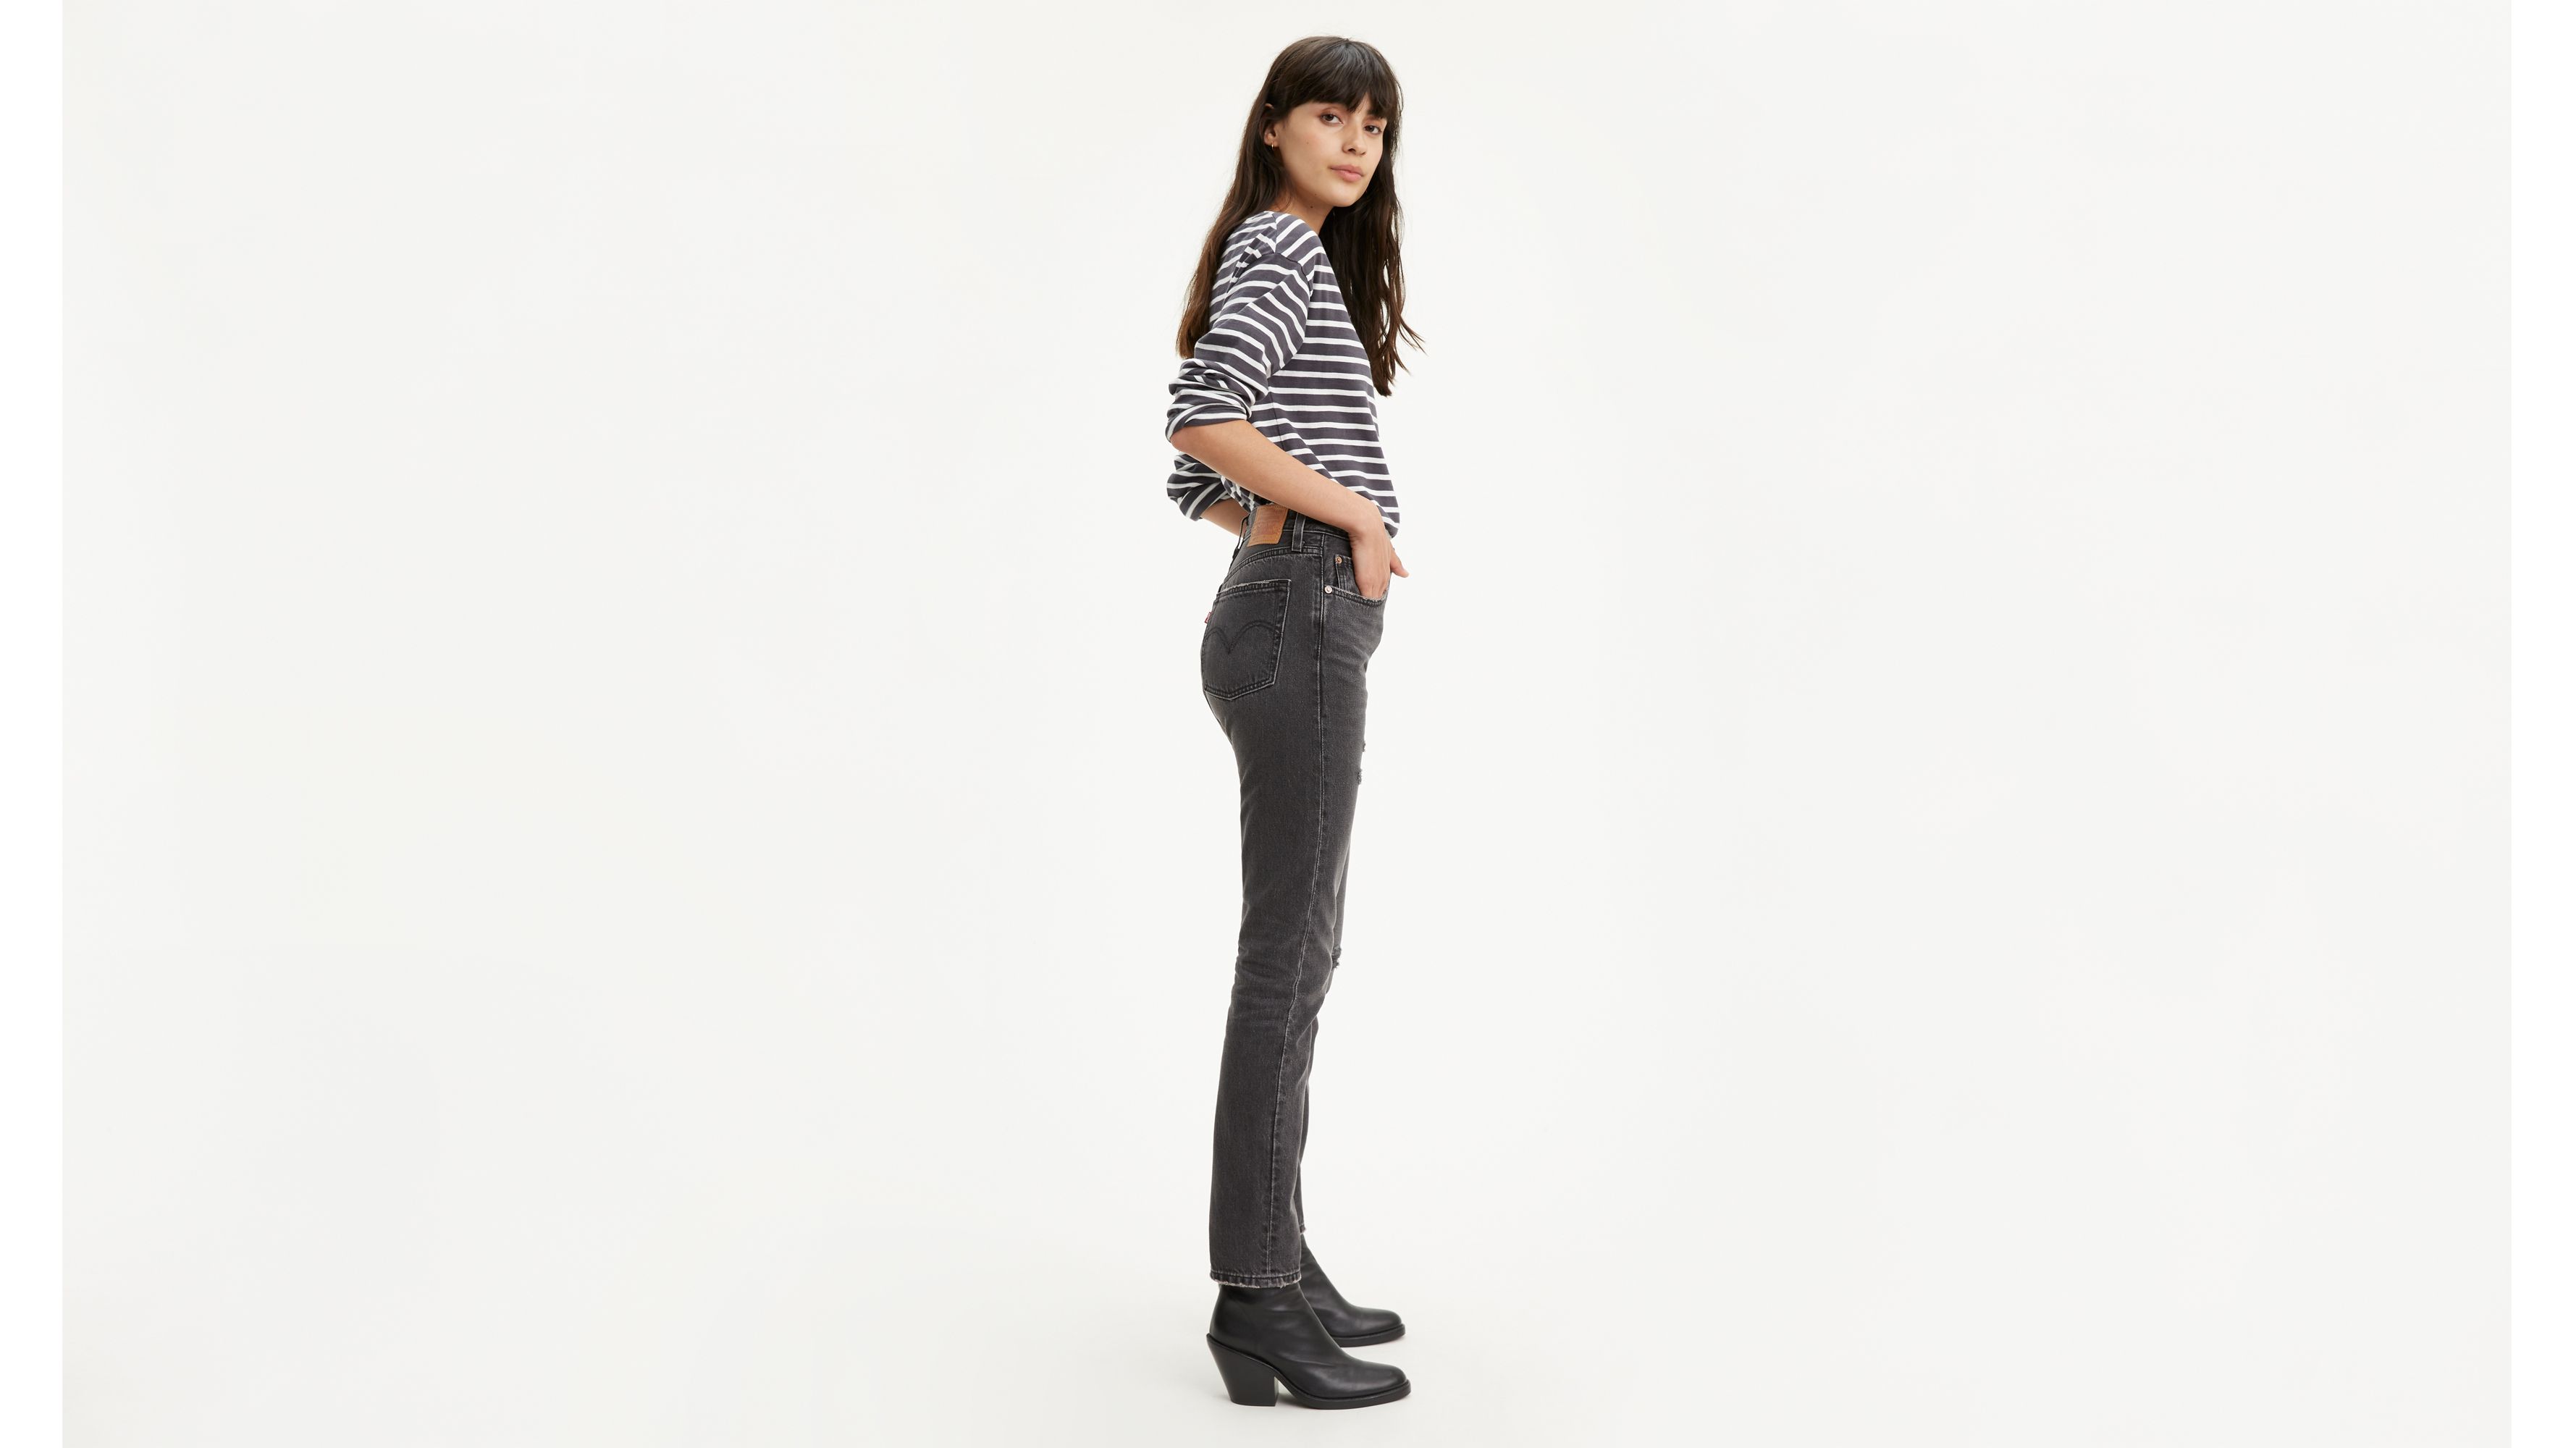 501 skinny jeans black